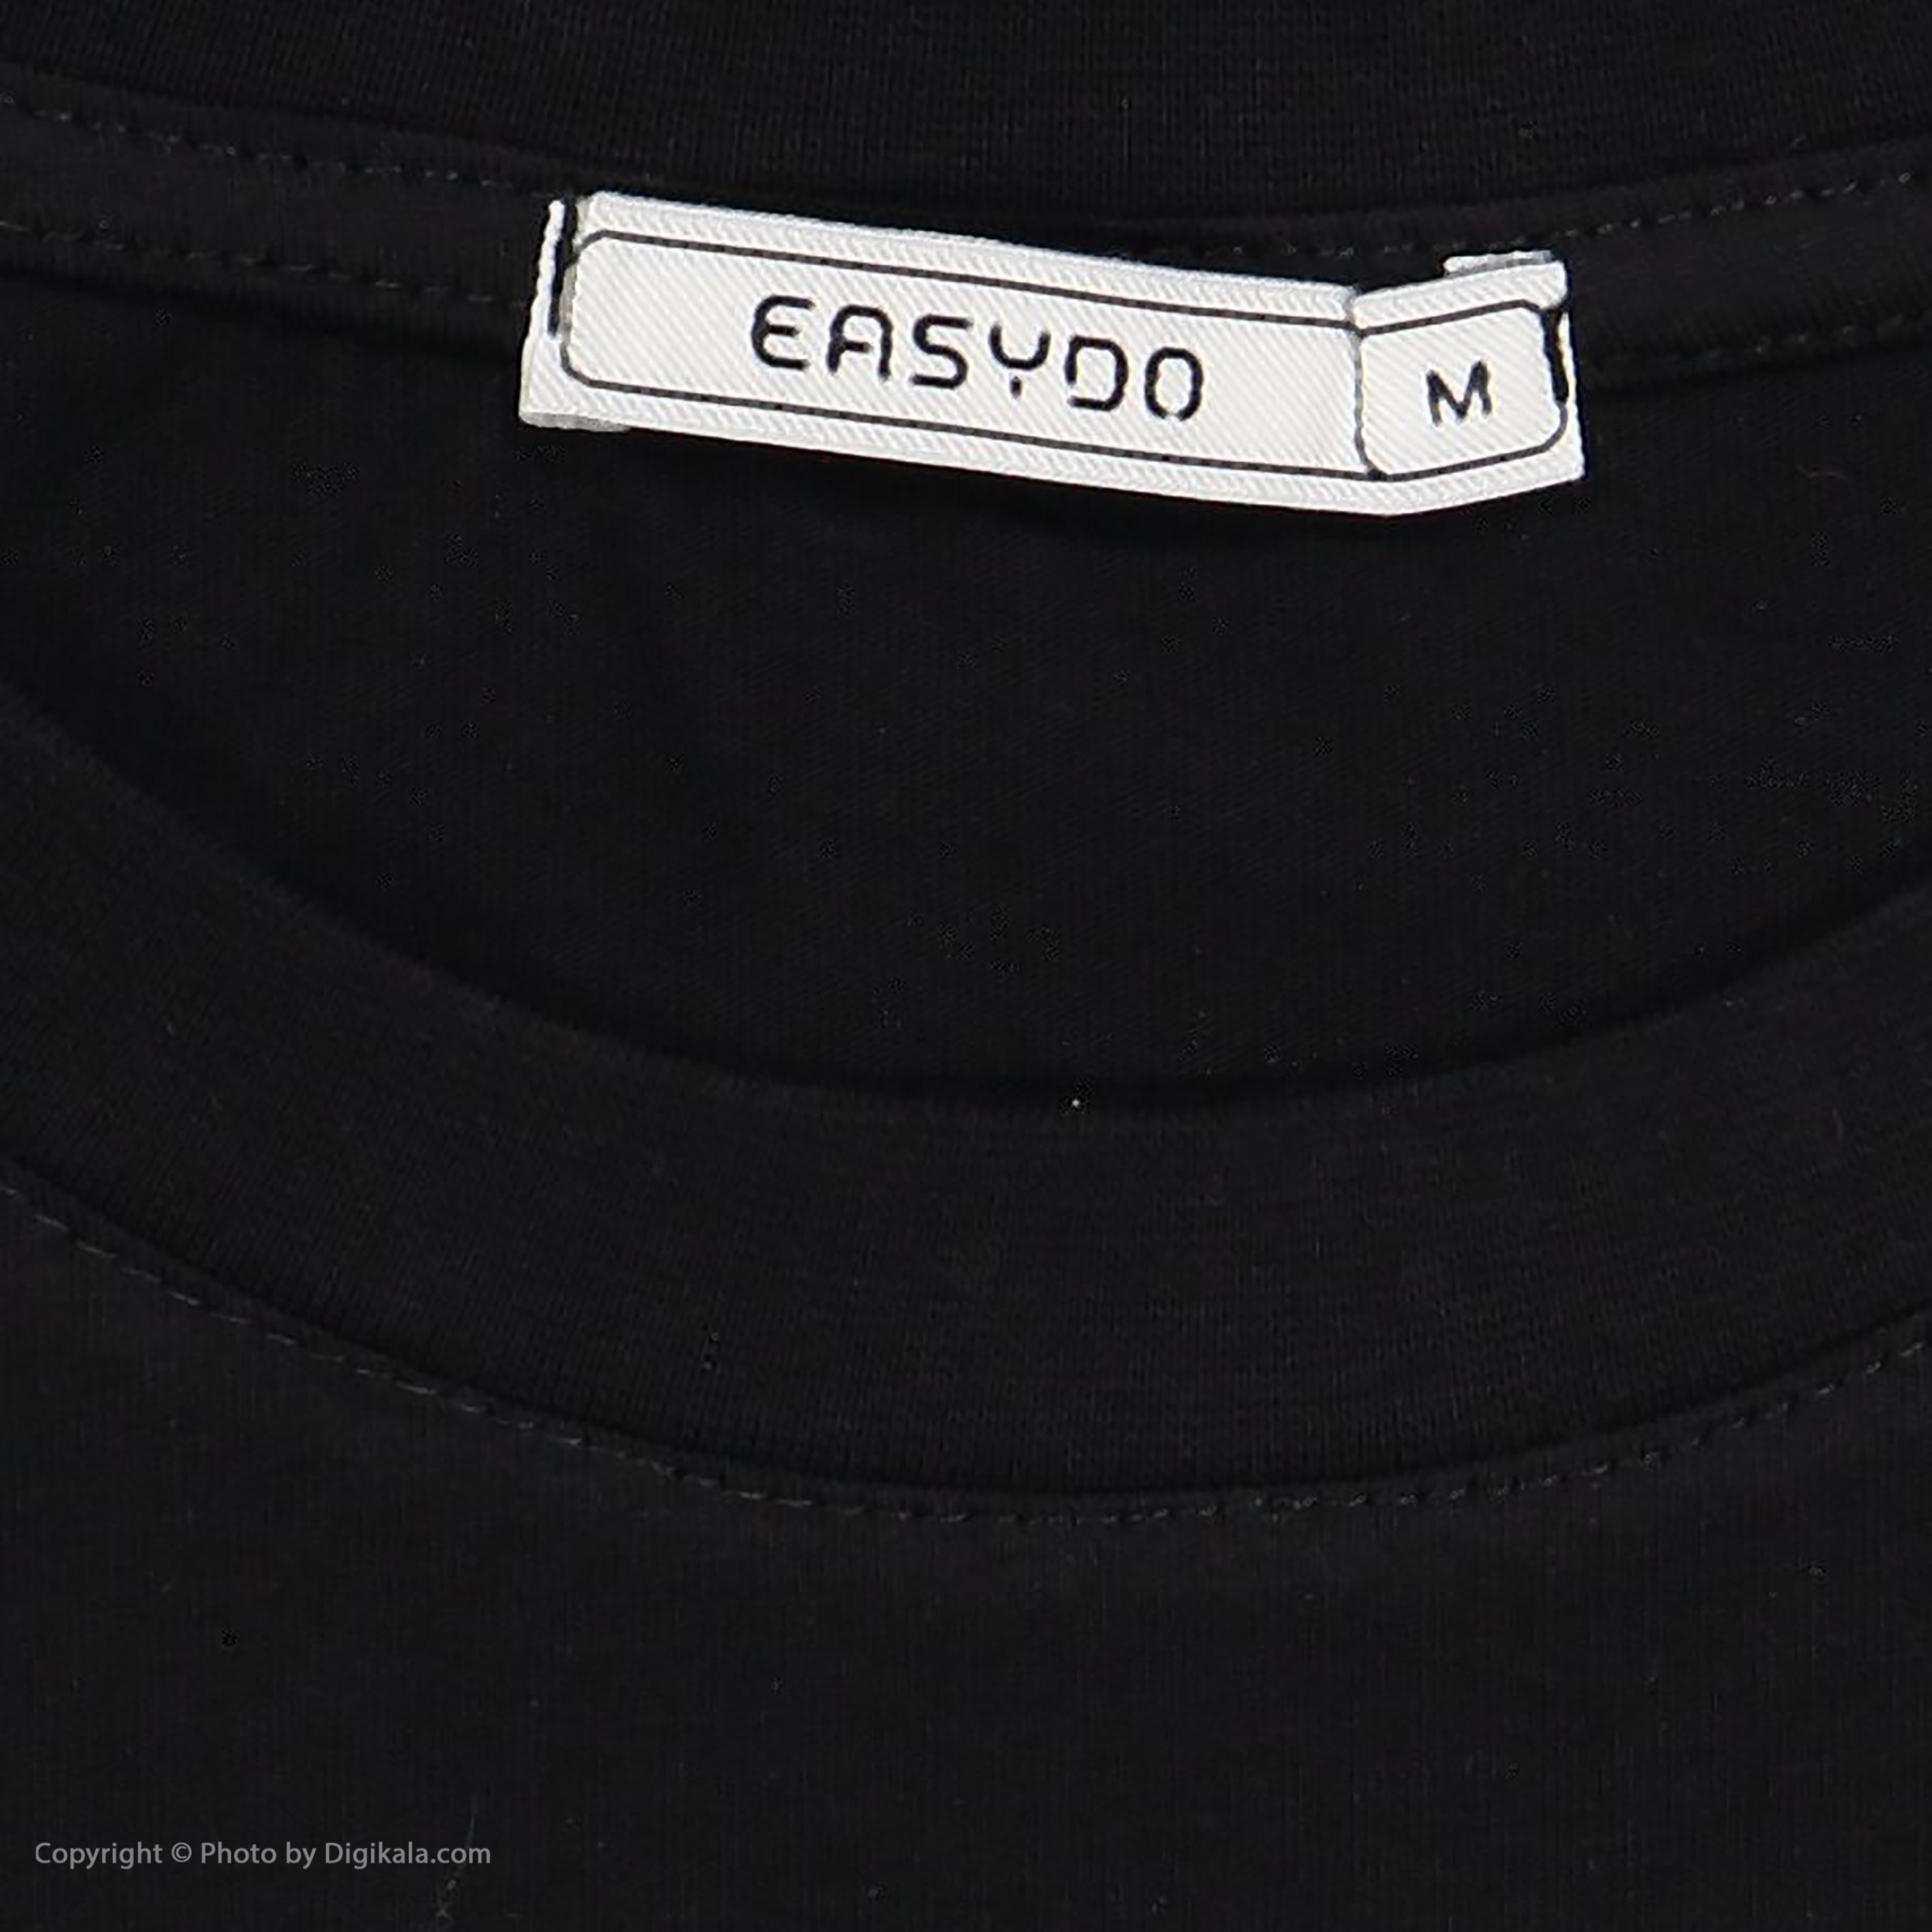 تی شرت اورسایز آستین کوتاه مردانه ایزی دو مدل 218125399 -  - 6